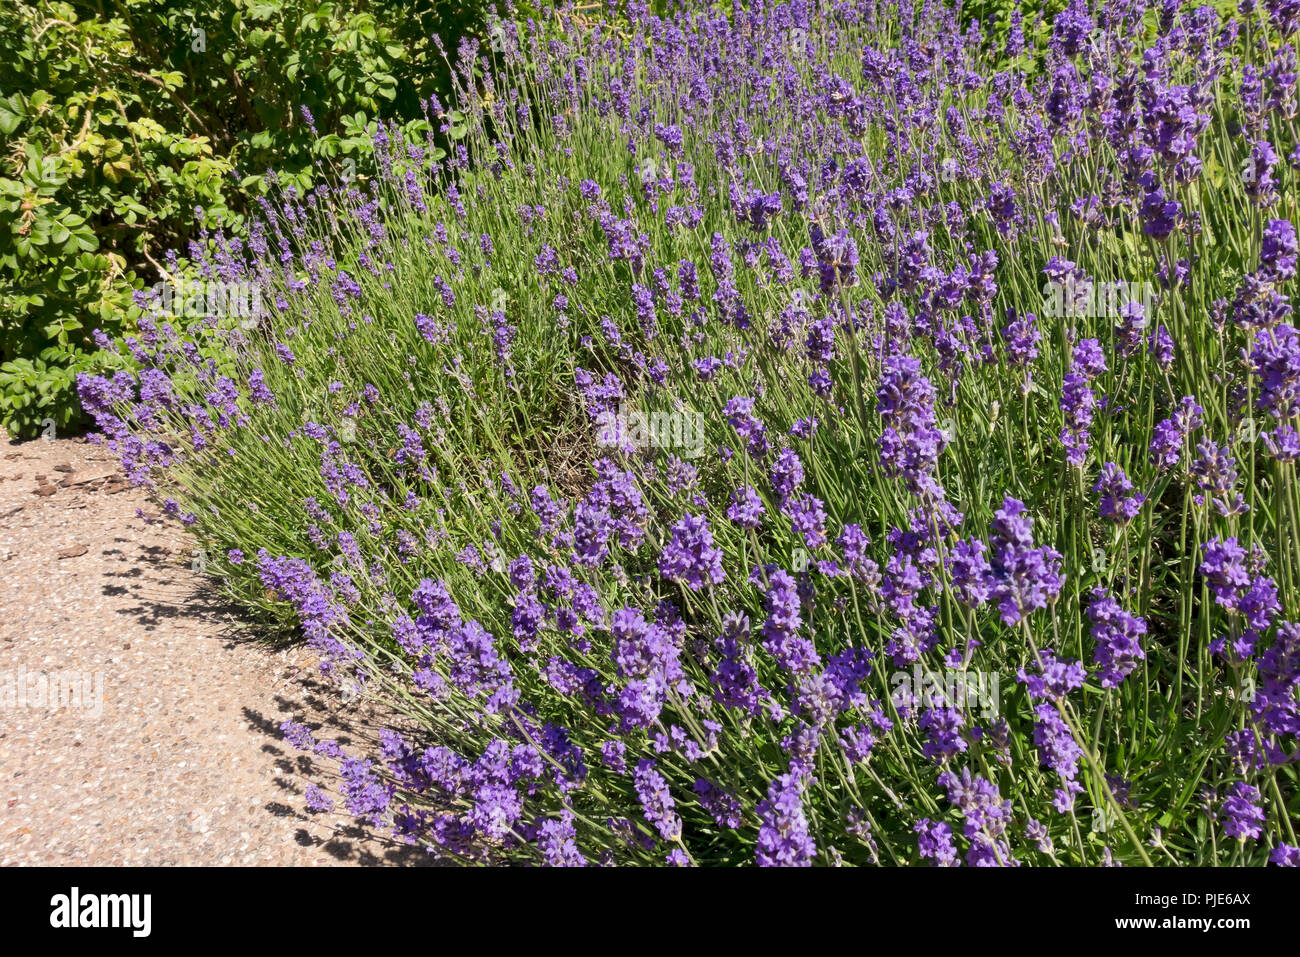 Gros plan des plantes de lavande anglaise fleurs violettes 'Munstead' fleuries en été Angleterre Royaume-Uni Royaume-Uni Grande-Bretagne Banque D'Images